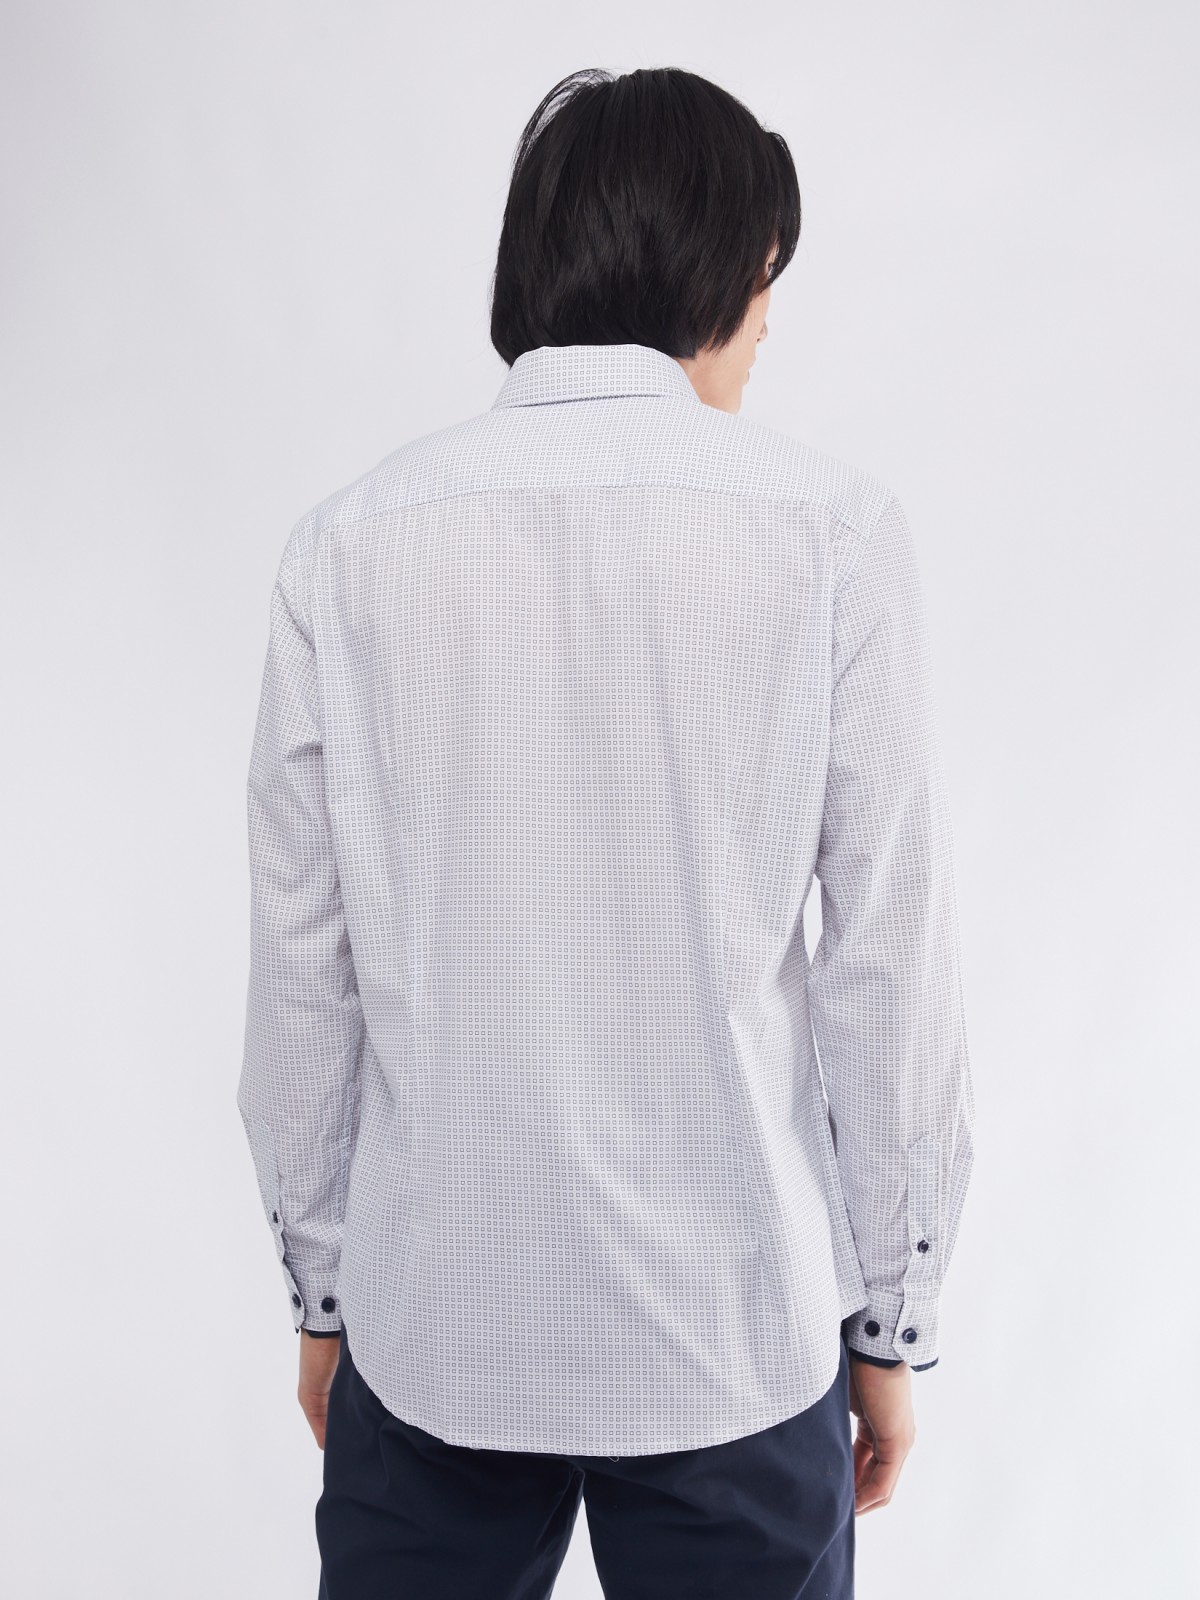 Офисная полуприталенная рубашка с мелким принтом zolla 01411217Y033, цвет белый, размер M - фото 6